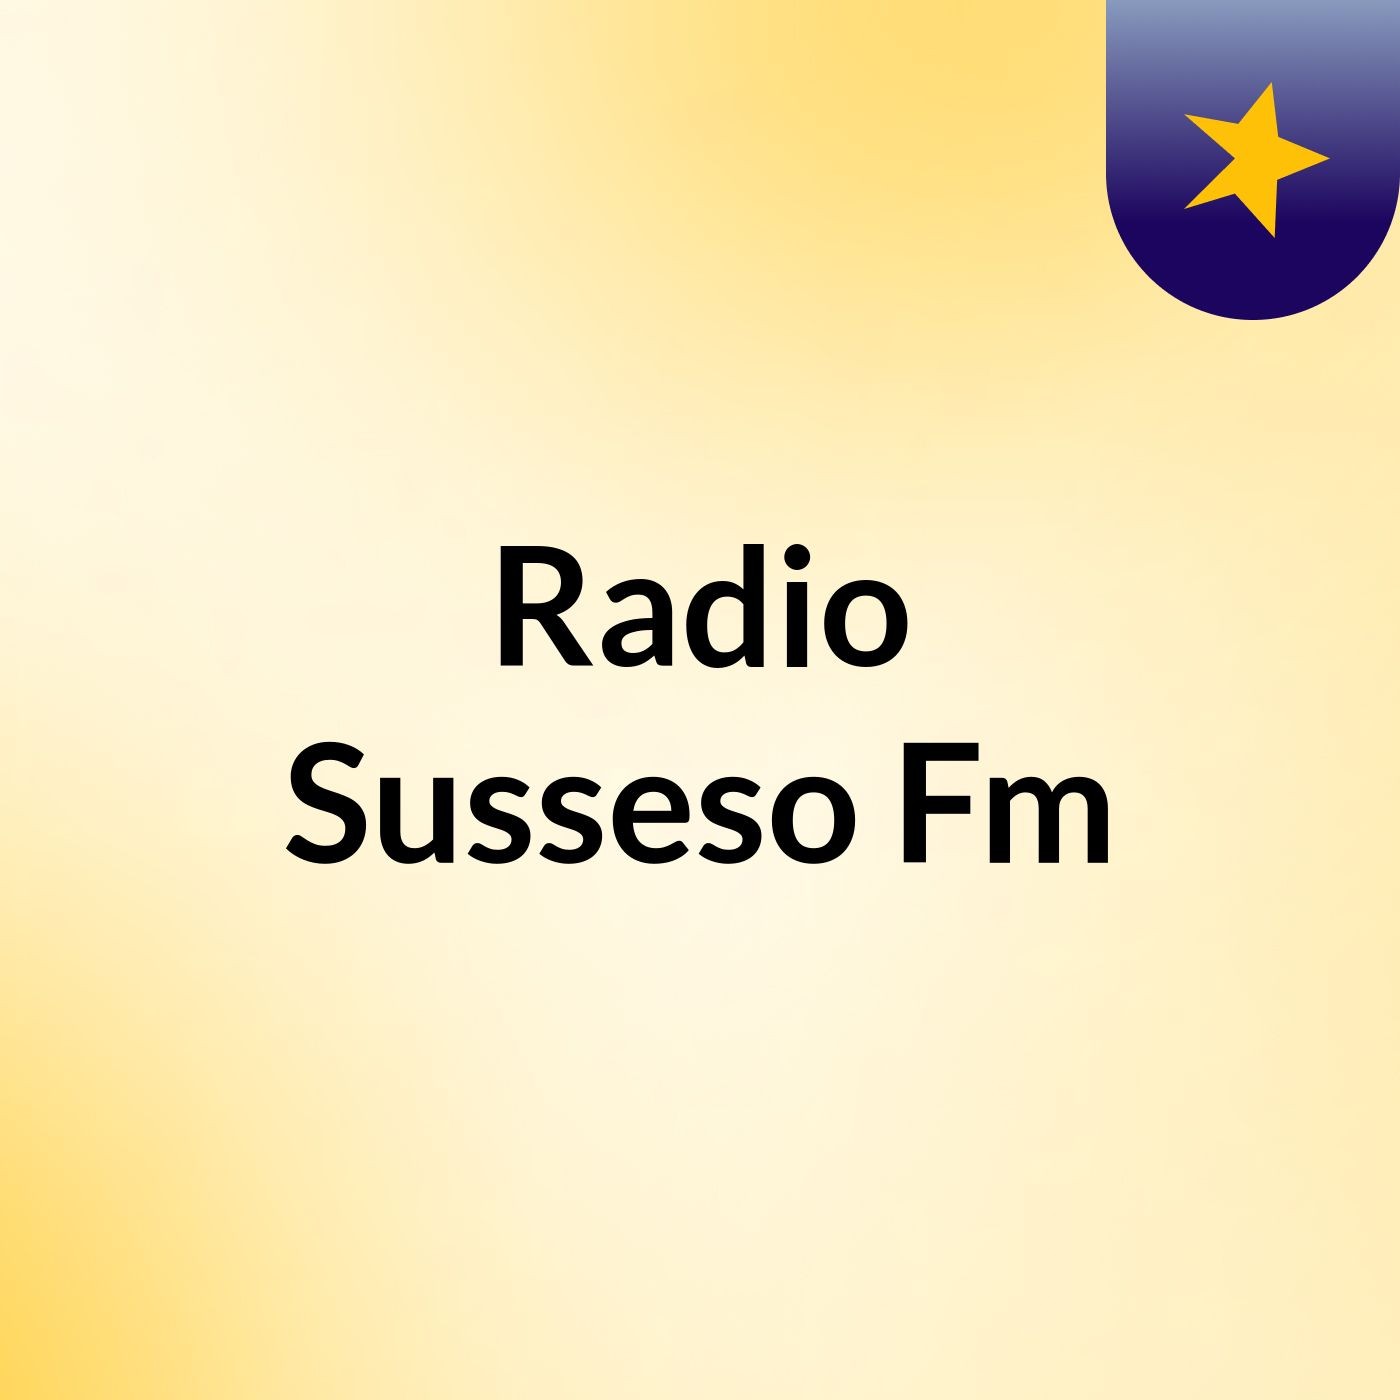 Radio Susseso Fm